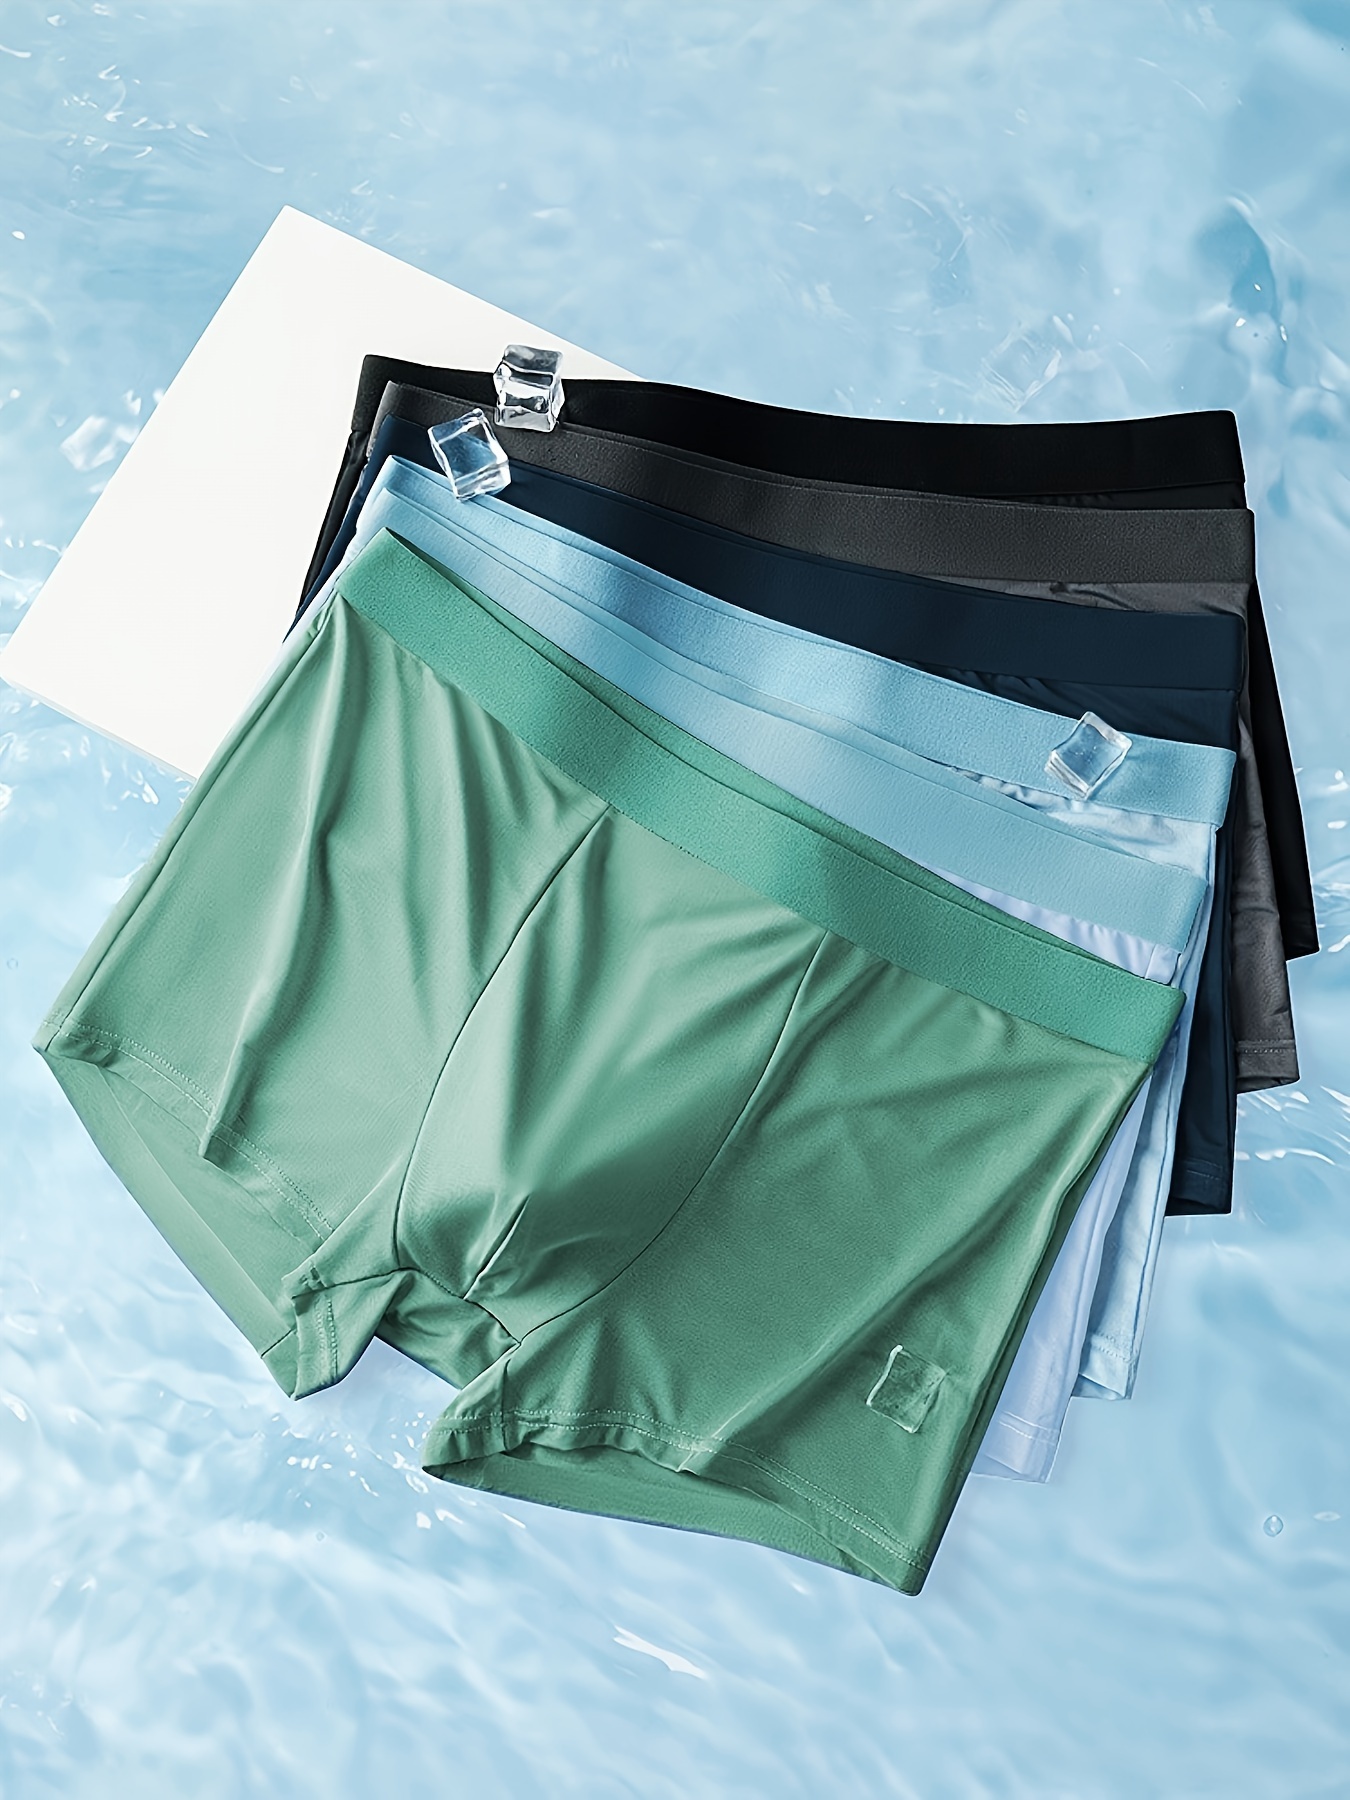 Silk Underwear For Men  Buy Online & Save - NZ Wide Delivery